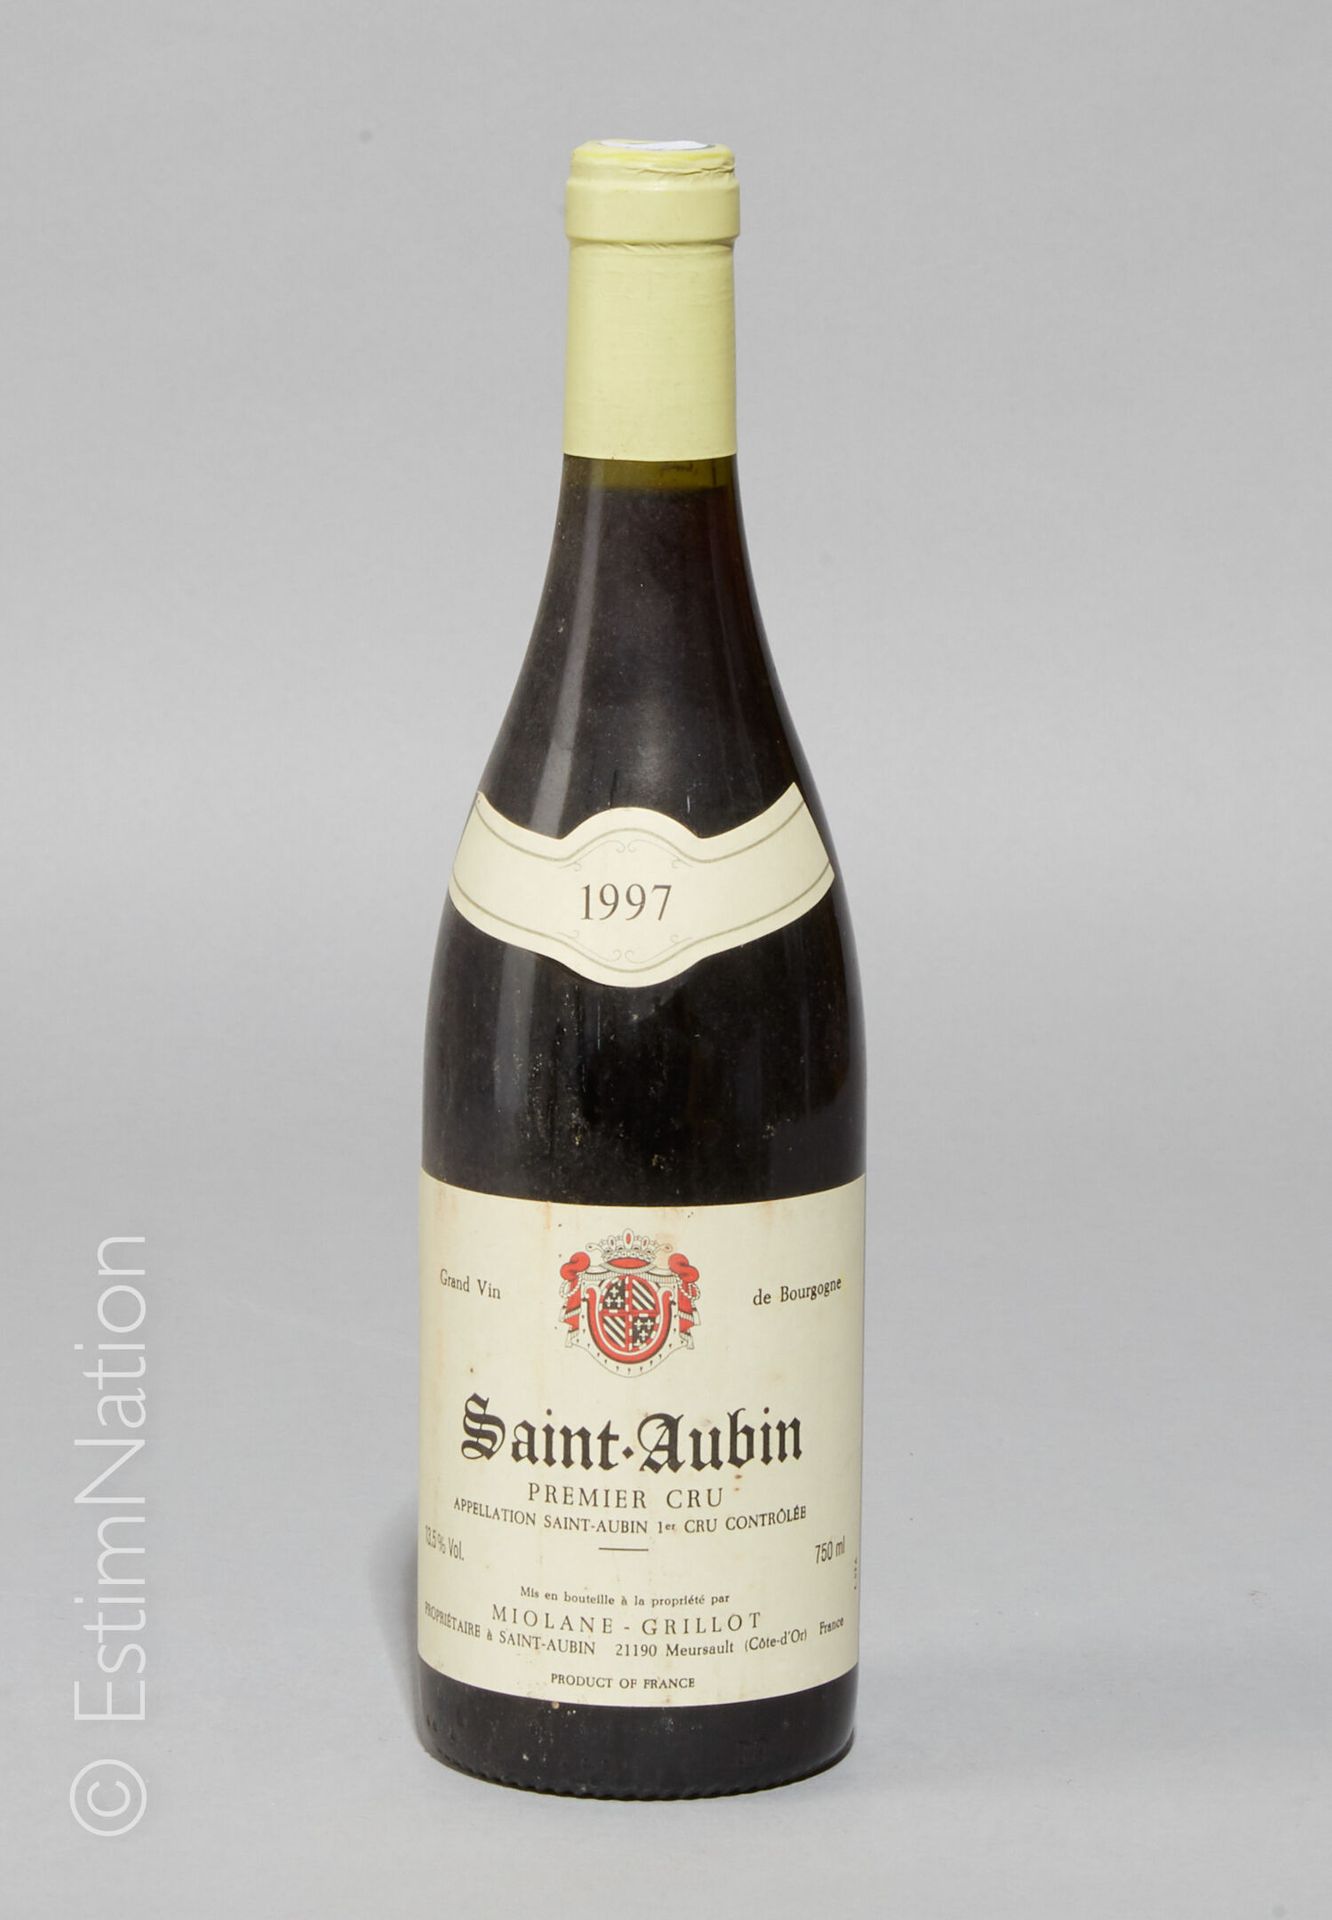 BOURGOGNE 1 bottle Saint-Aubin 1997 1er Cru Grillot 

(E. A, m, tlg)